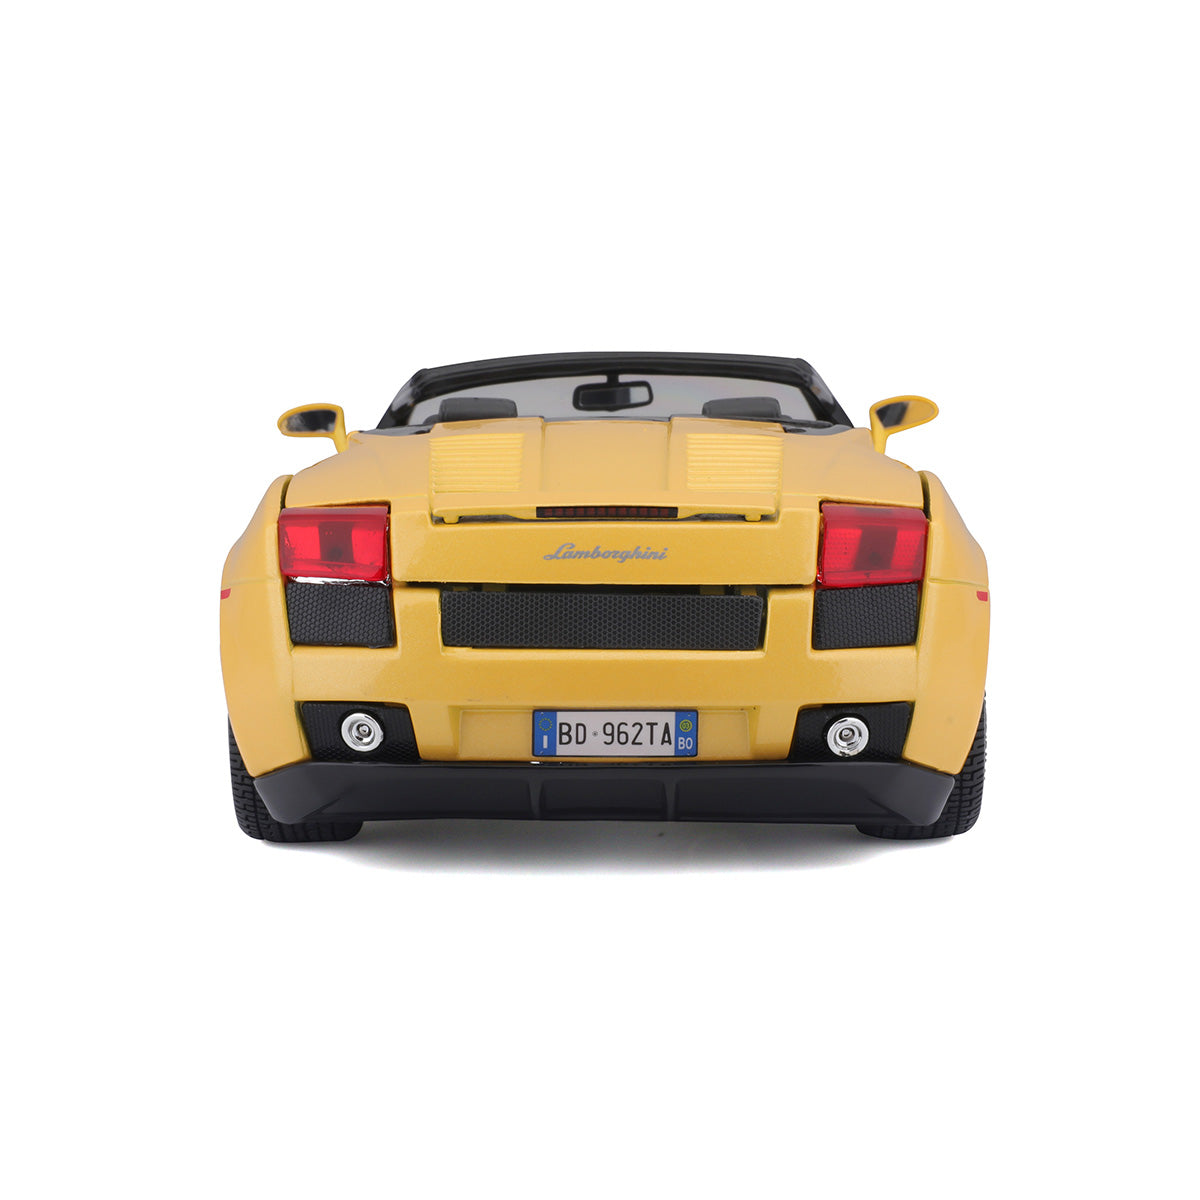 18-12016 - Bburago - 1:18 - Lamborghini Gallardo Spyder - Gialla Metallizzata